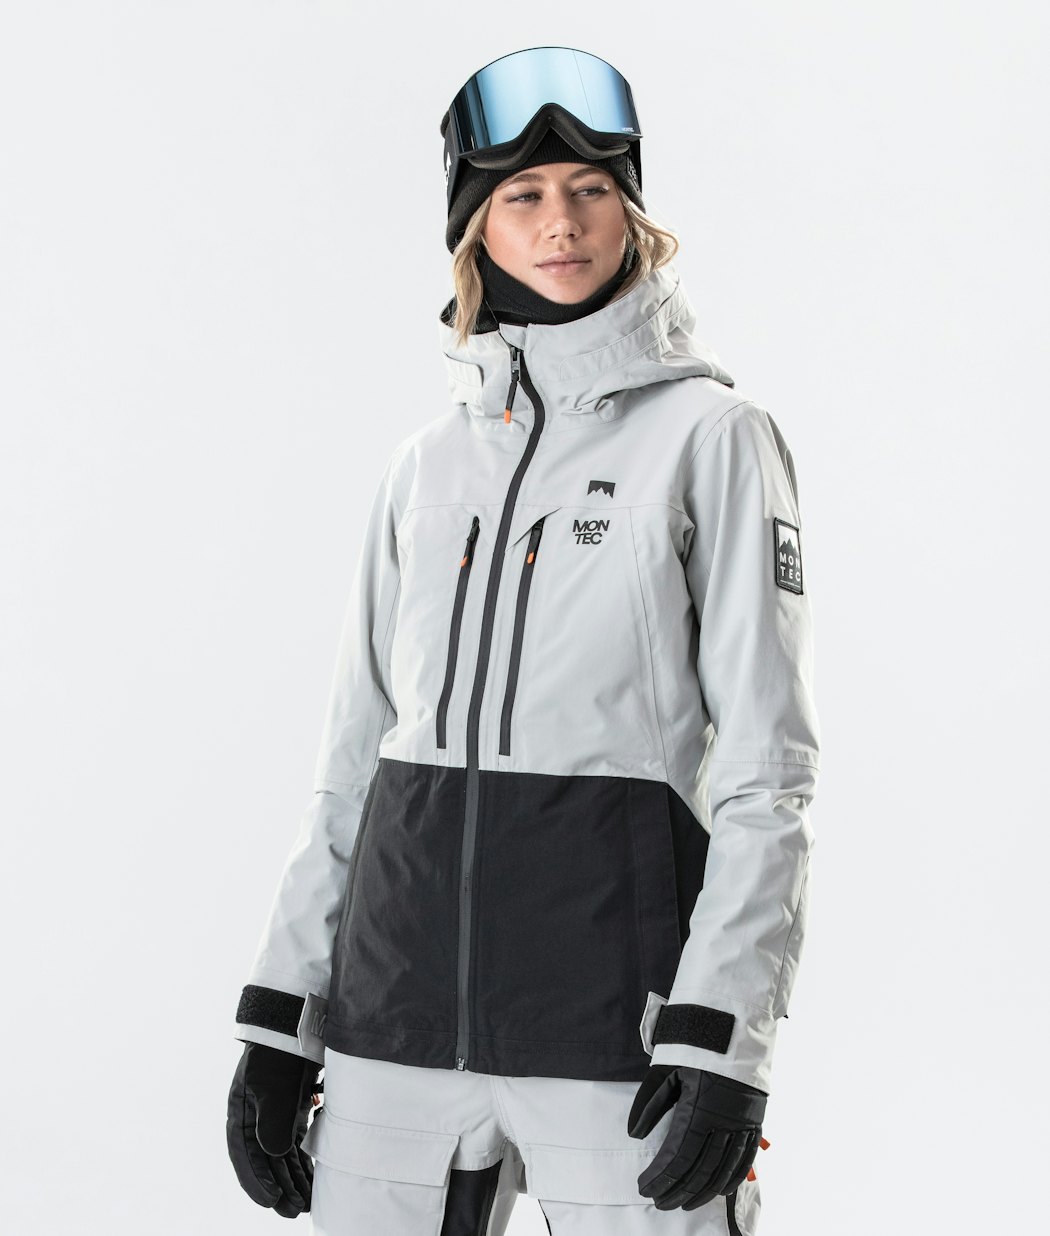 Moss W 2020 Snowboard Jacket Women Light Grey/Black